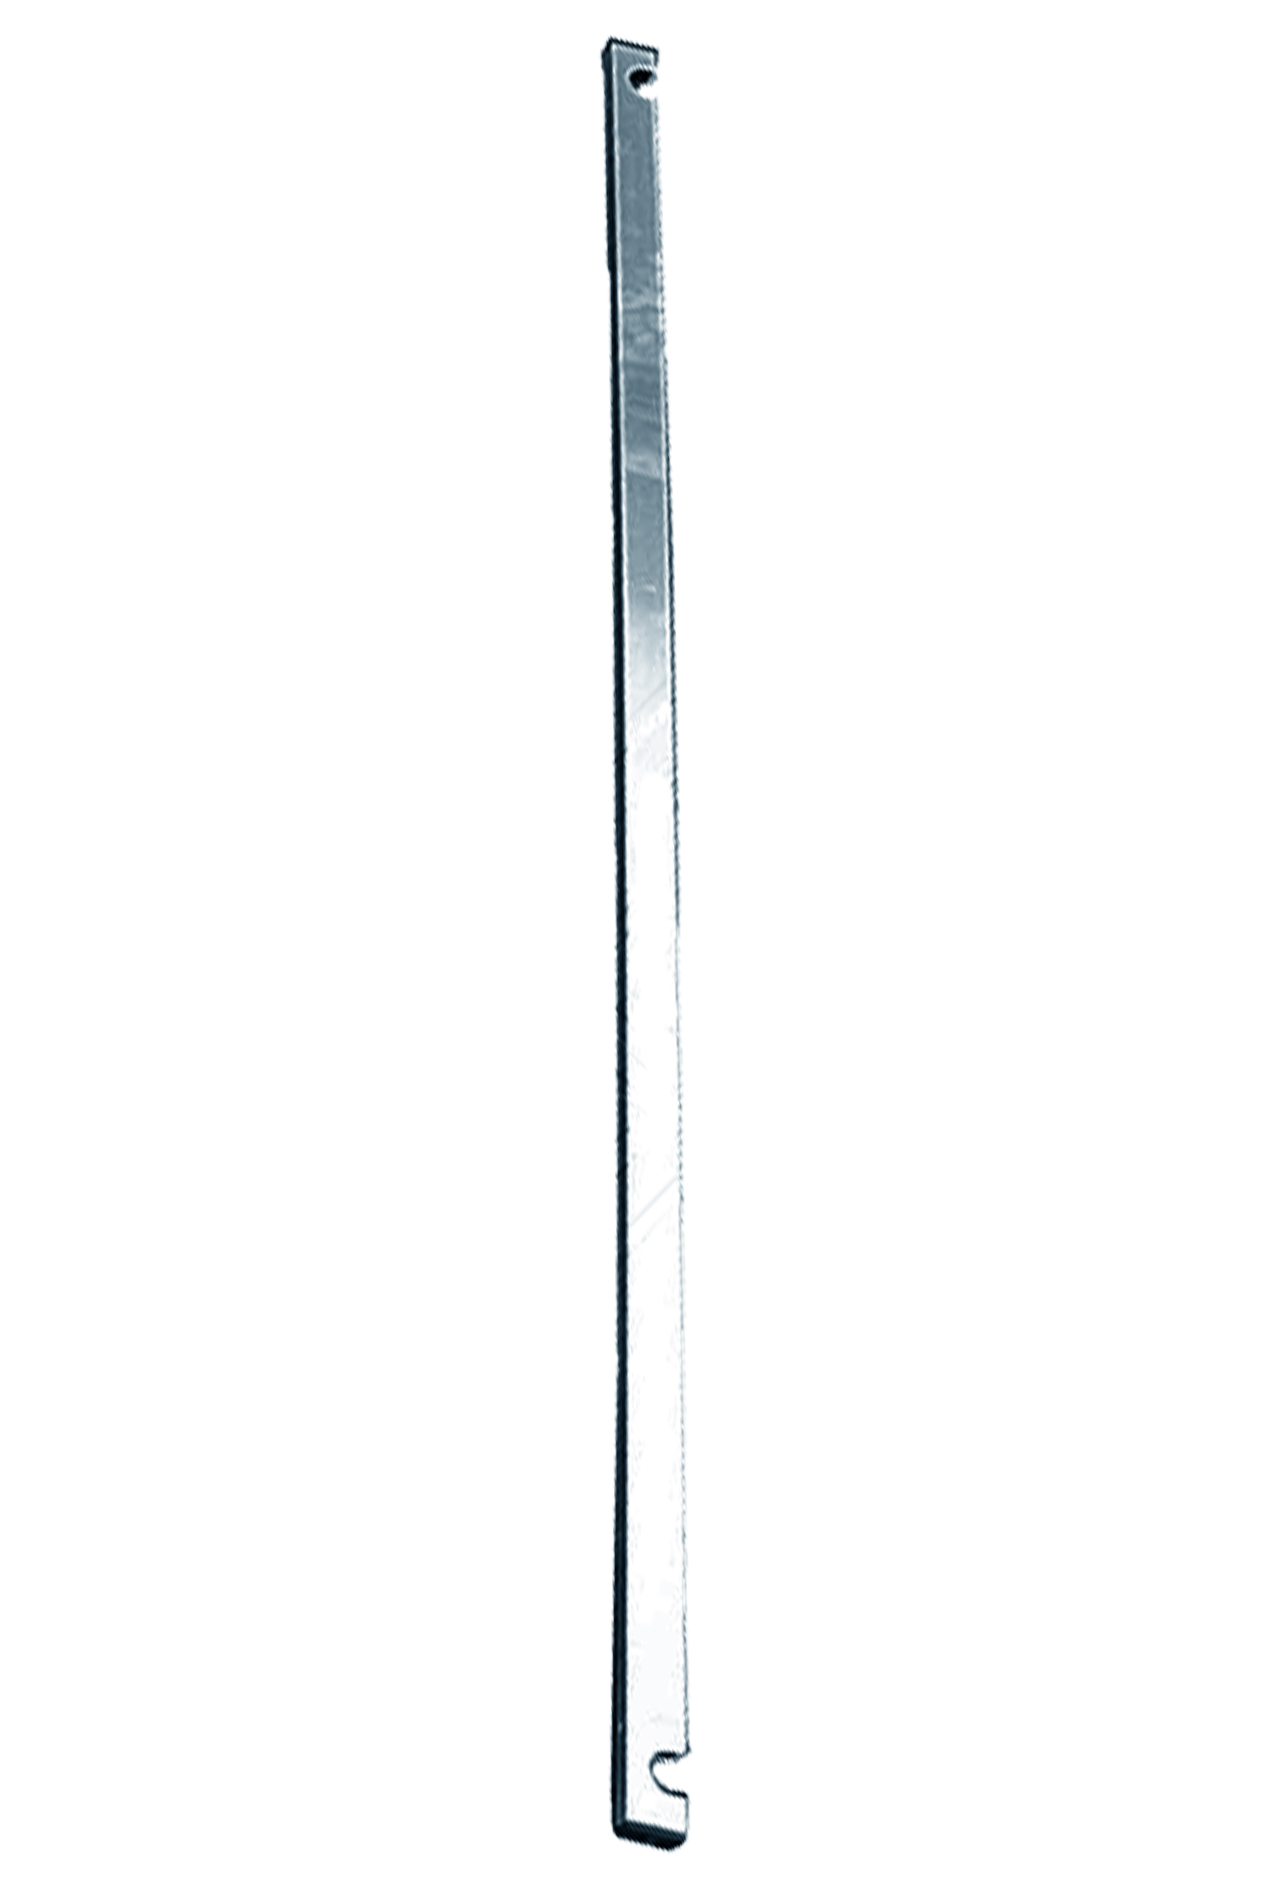 Дополнительное изображение Stabilo серии 1000 рабочая высота 4,2 м, размер площадки (2x0.75 м)